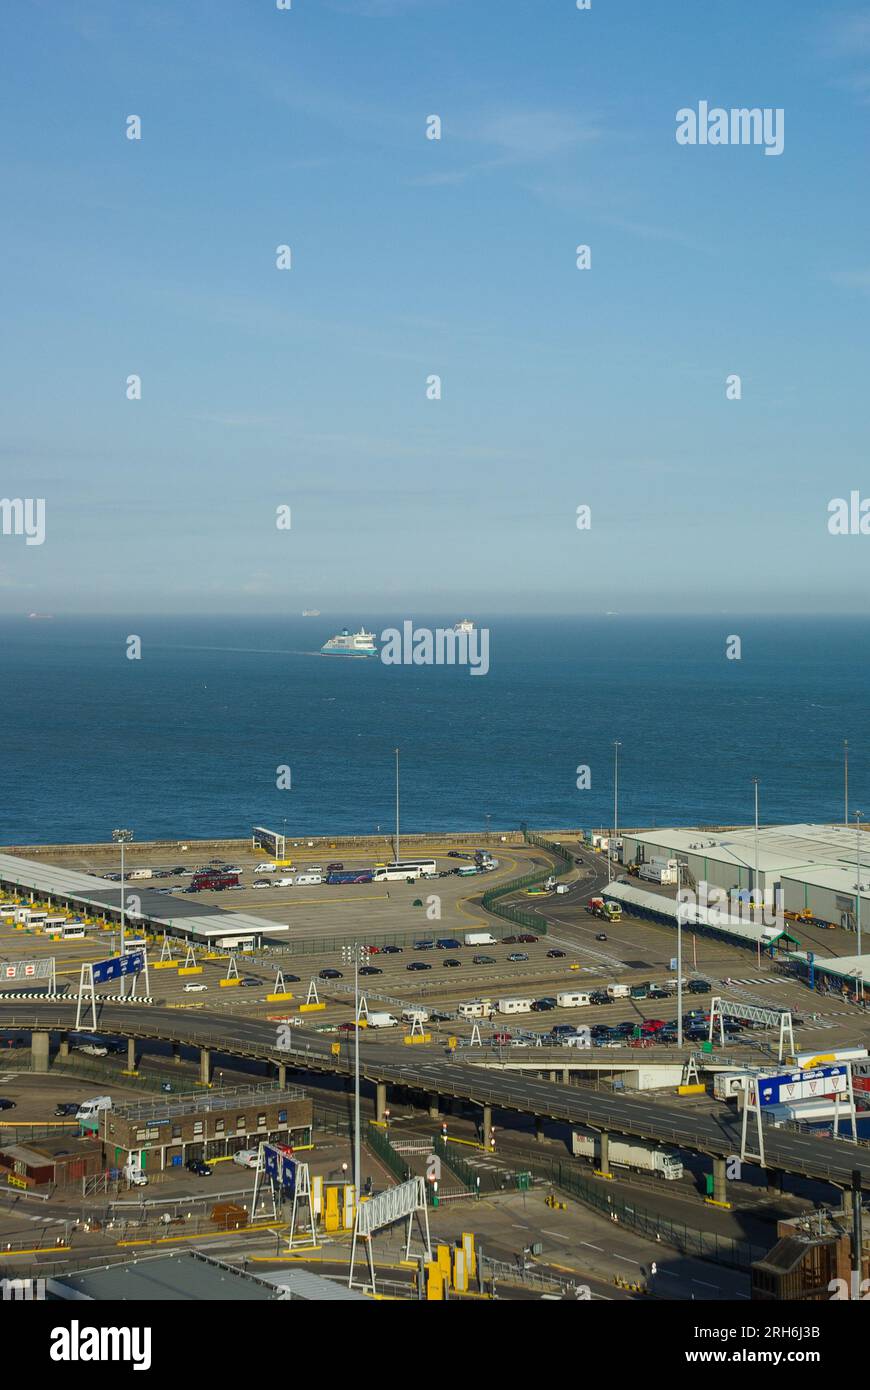 Port de Douvres Port transmanche situé à Douvres, Kent, Angleterre, Royaume-Uni. Claire journée ensoleillée regardant à travers la France. Peu de véhicules attendent. Ferries loin Banque D'Images